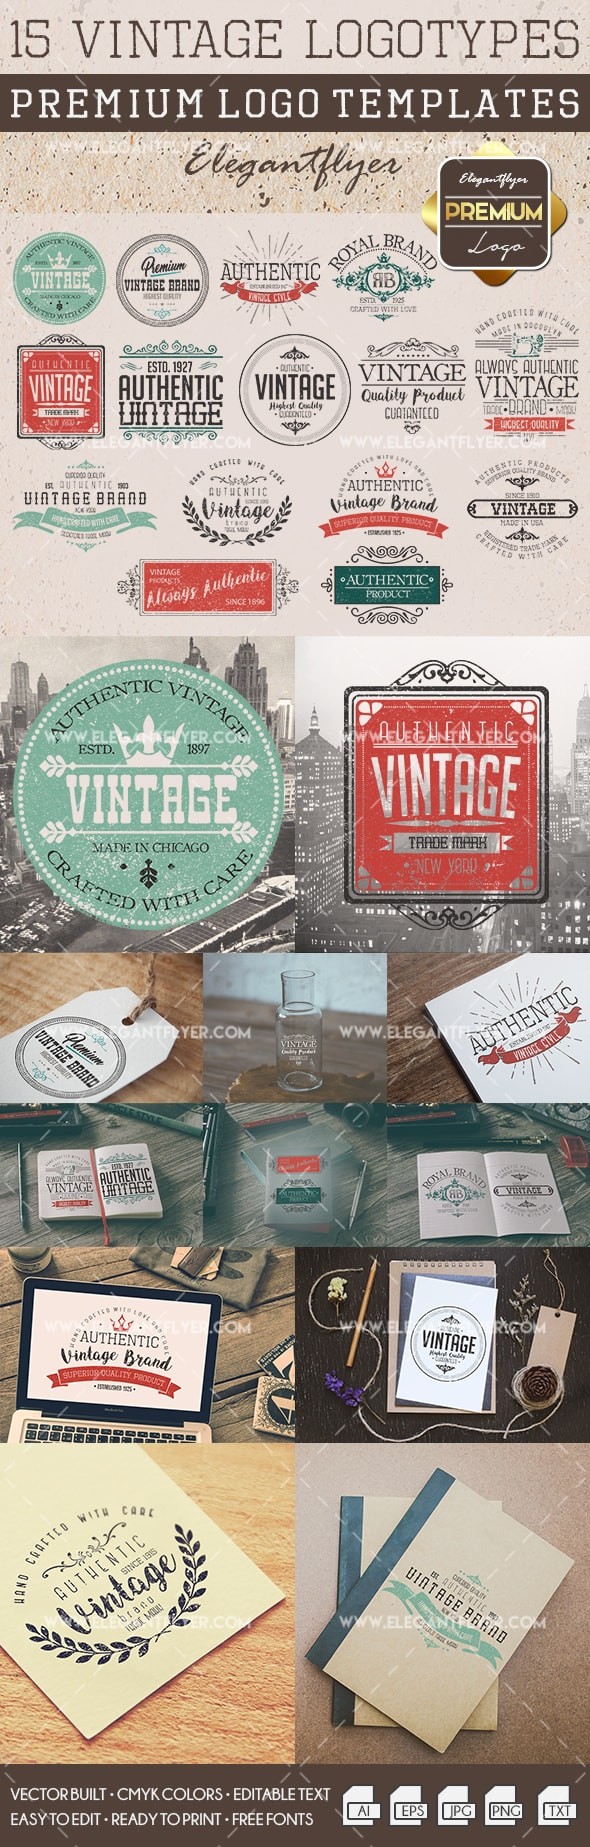 15 Vintage Logotypes by ElegantFlyer